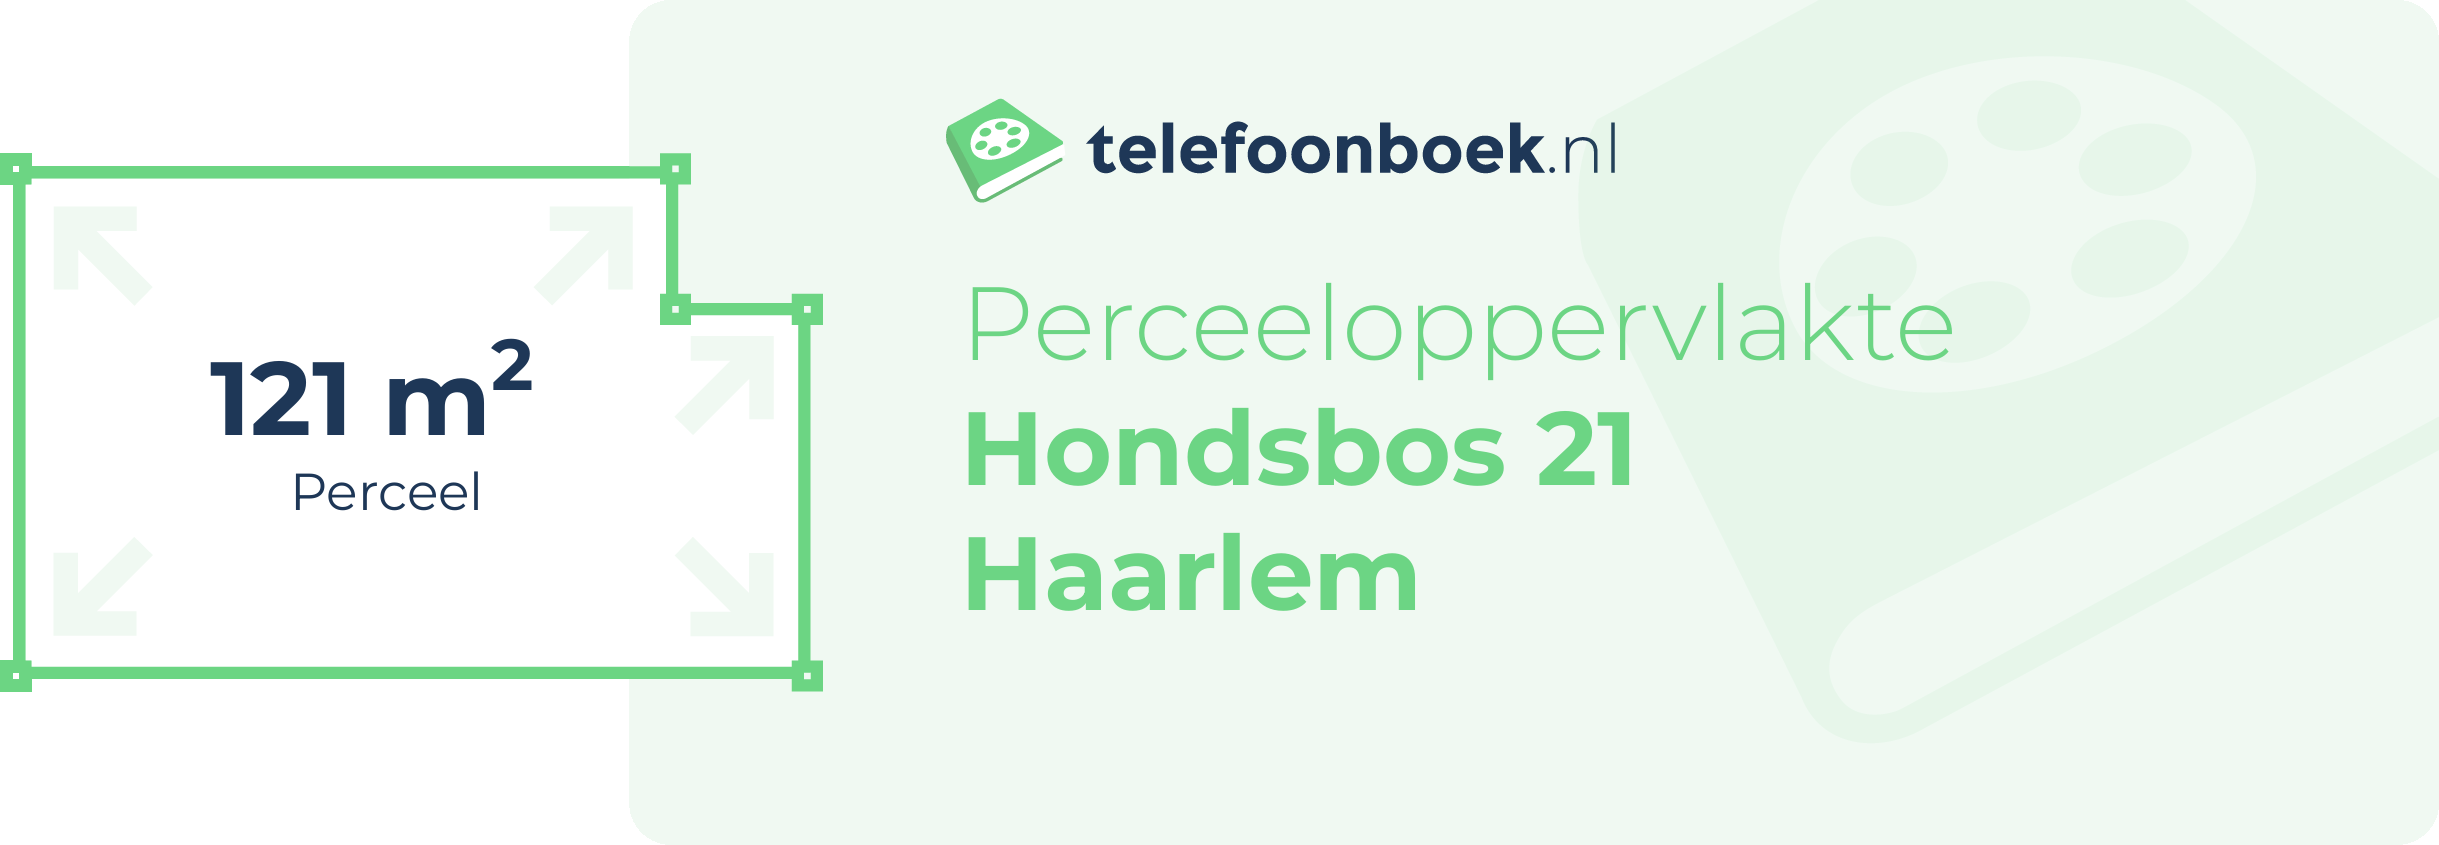 Perceeloppervlakte Hondsbos 21 Haarlem